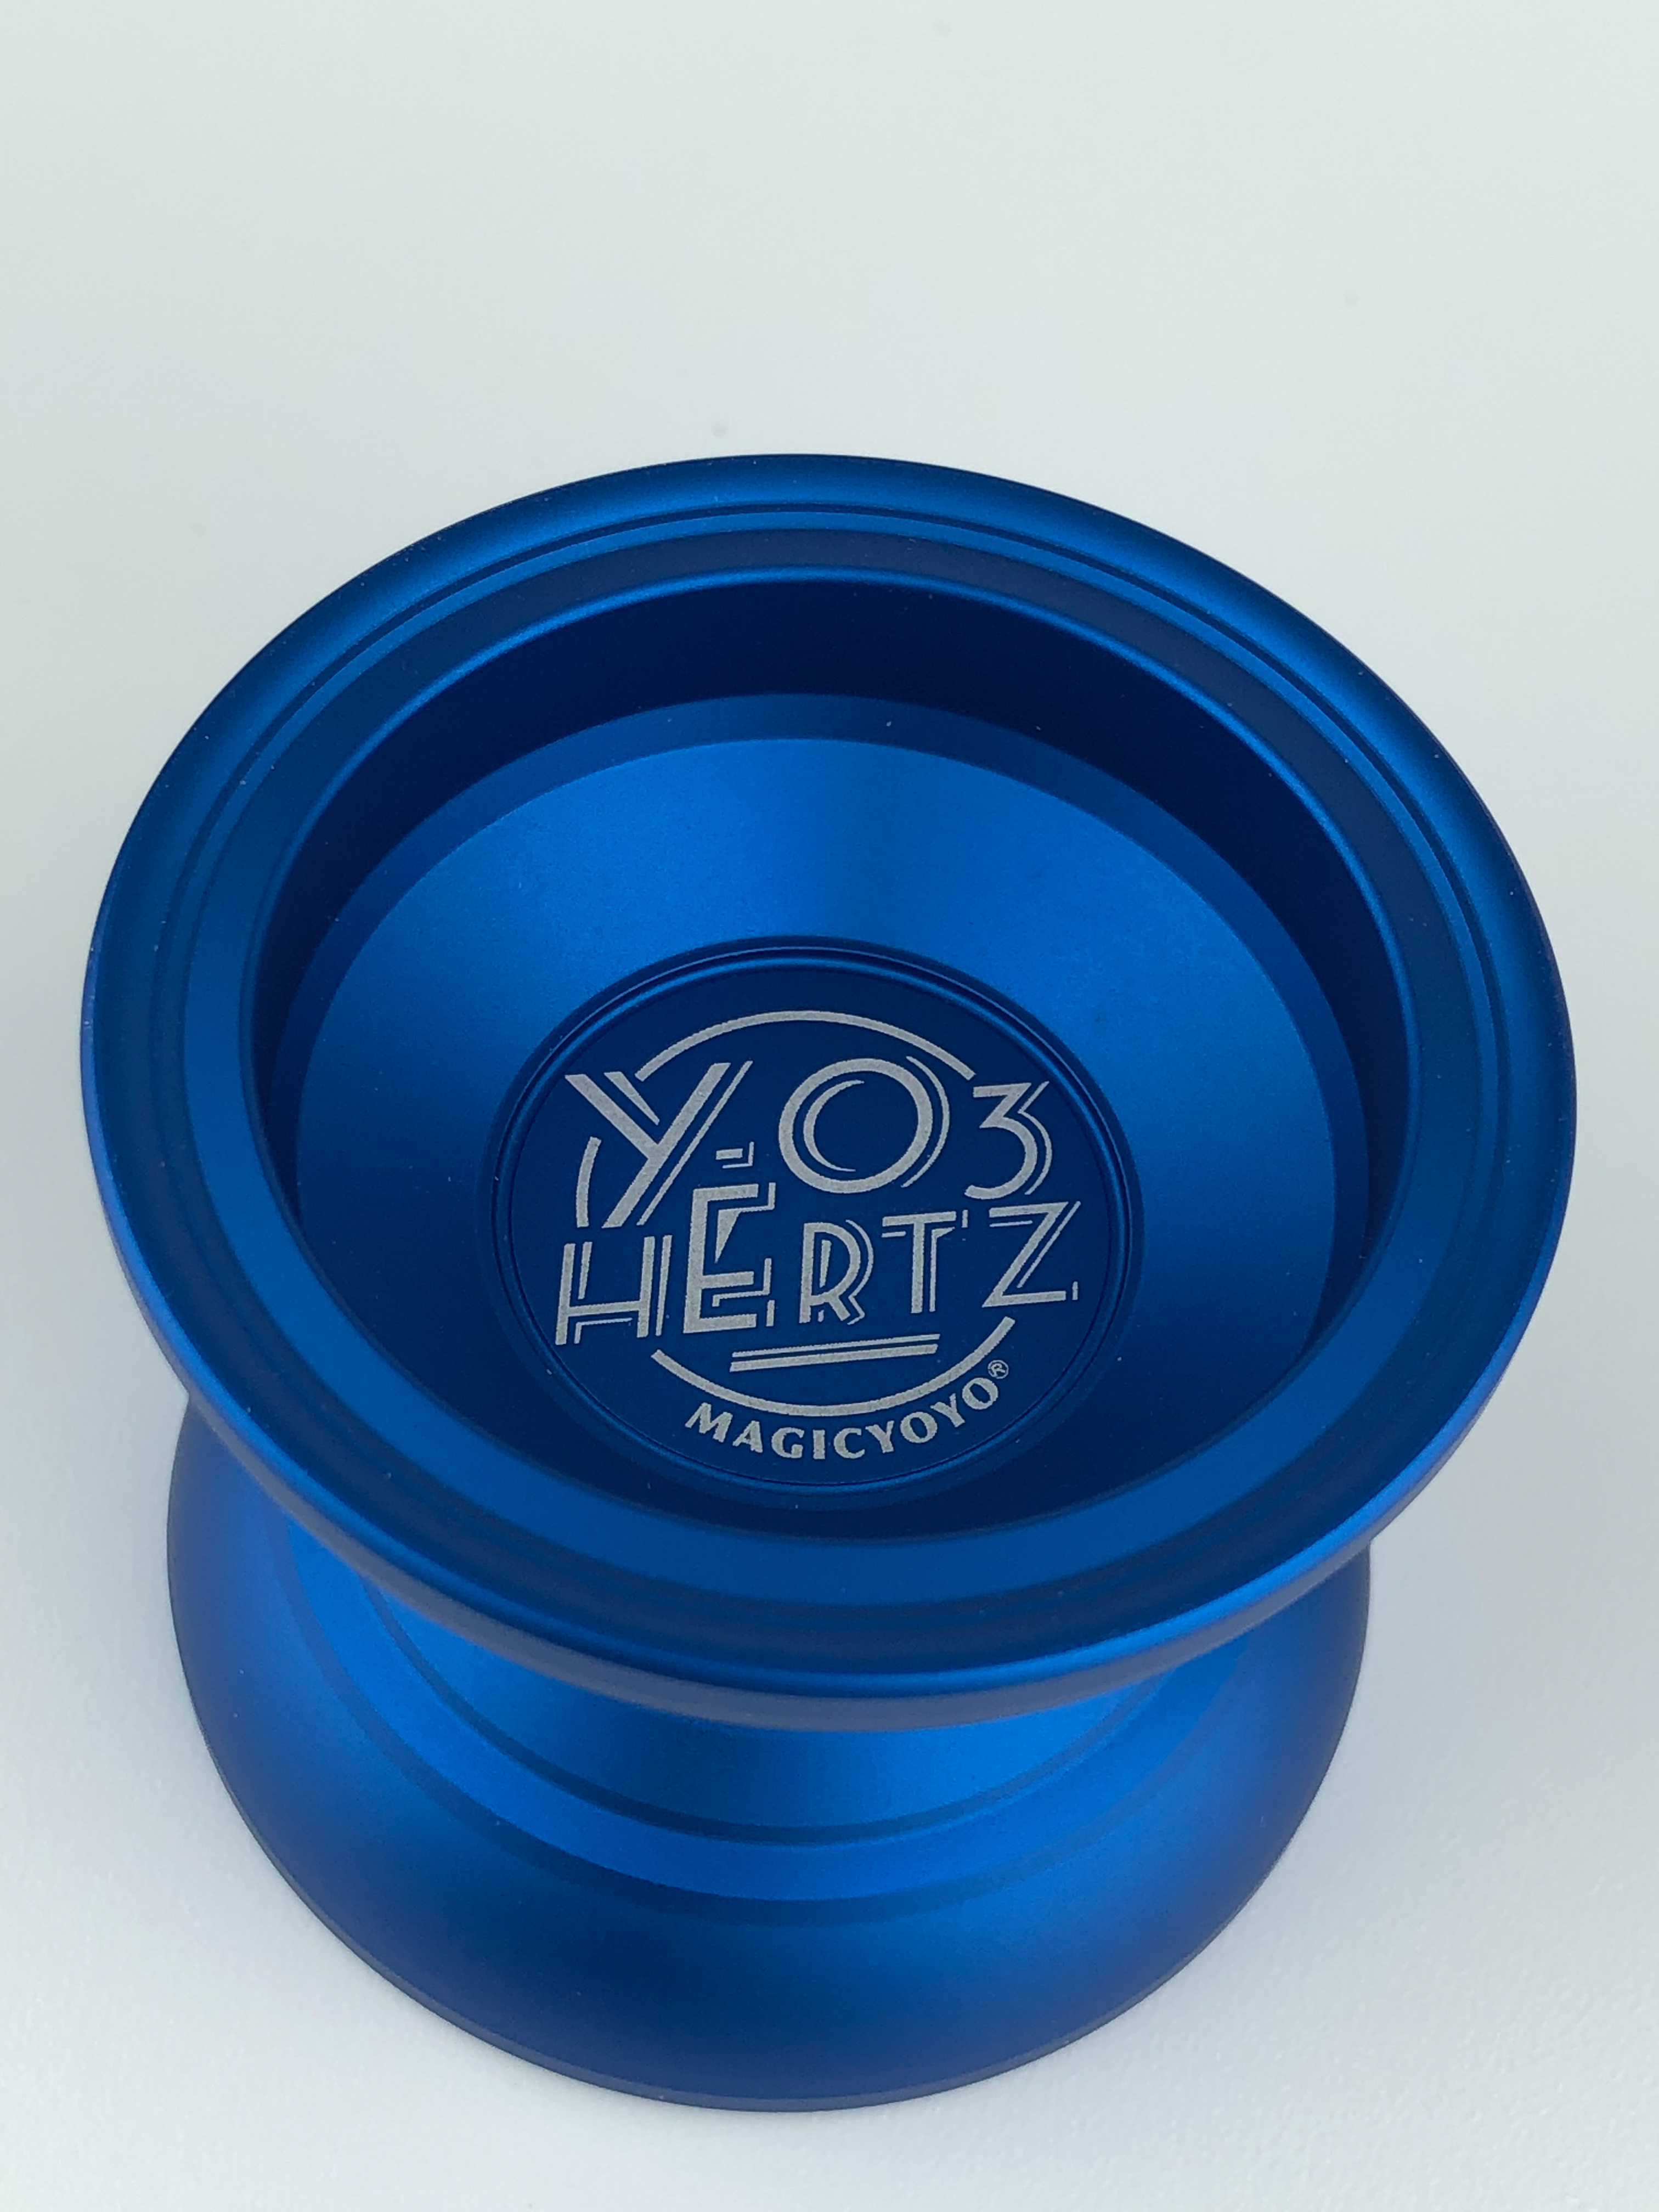 Magic YoYo YO3 Hertz - Blue color at Yo-Yo.gr